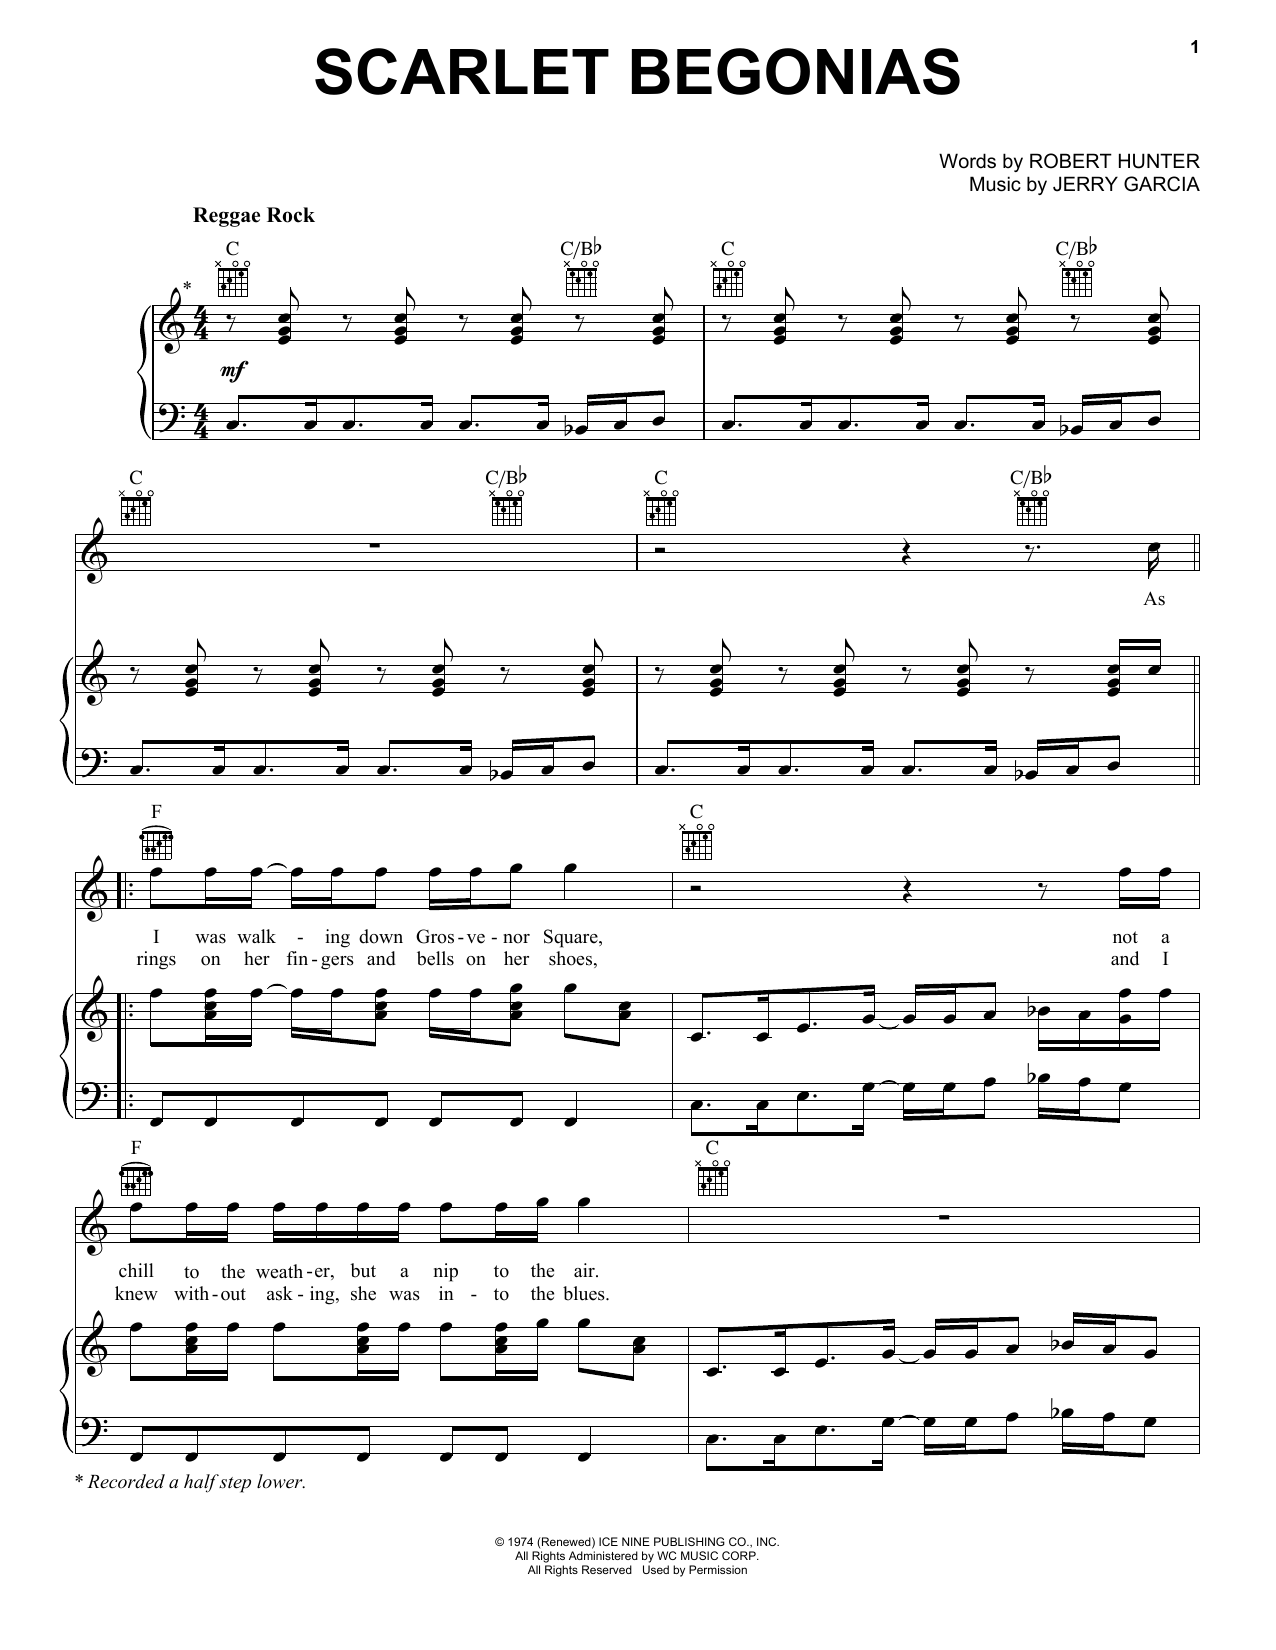 Sublime Scarlet Begonias Sheet Music Notes & Chords for Ukulele - Download or Print PDF